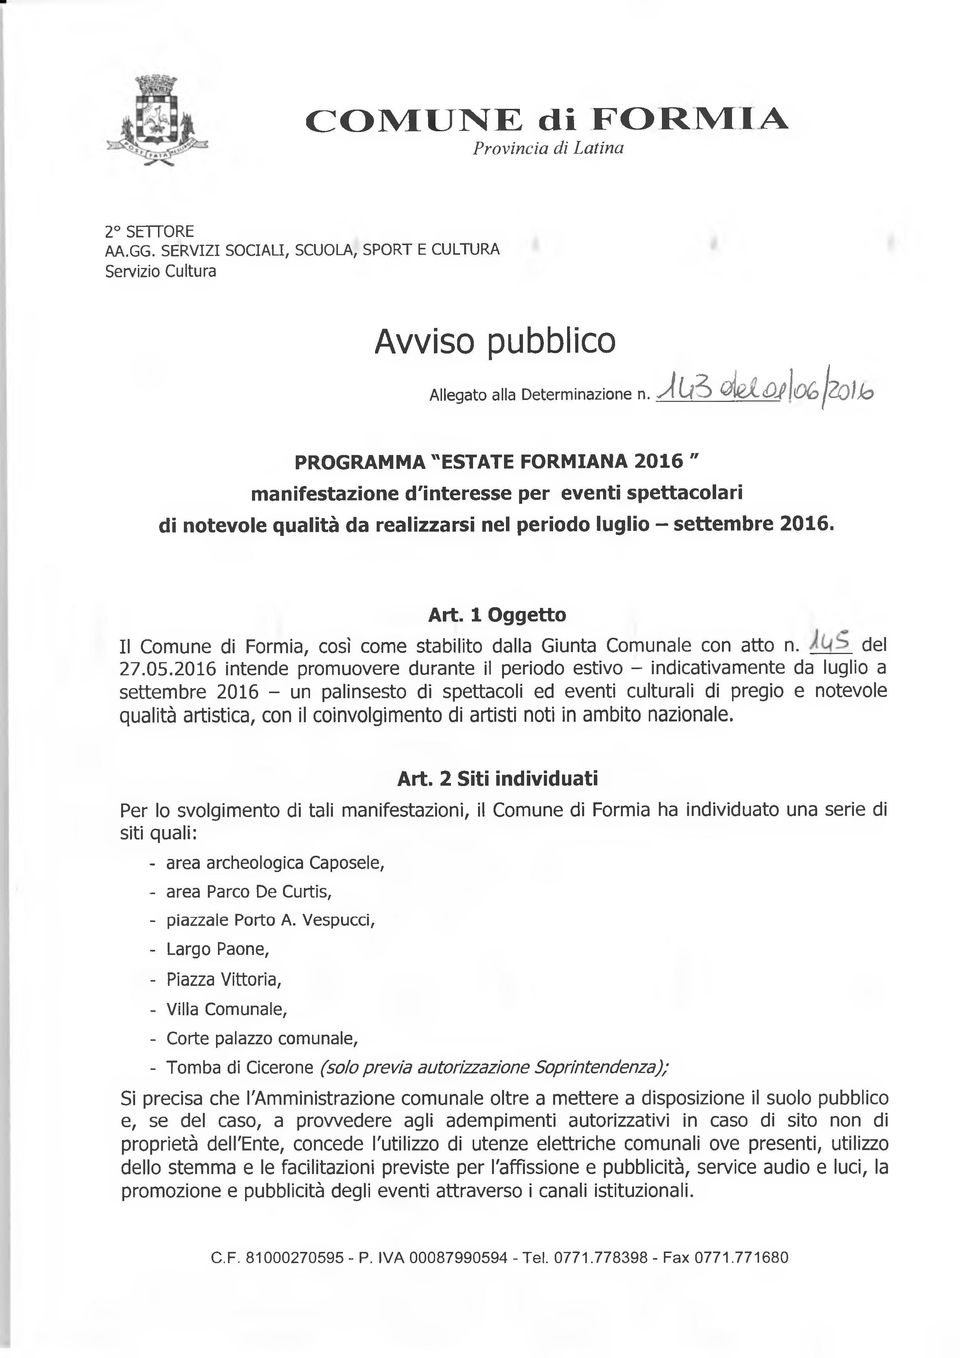 1 Oggetto Il Comune di Formia, così come stabilito dalla Giunta Comunale con atto n. del 27.05.